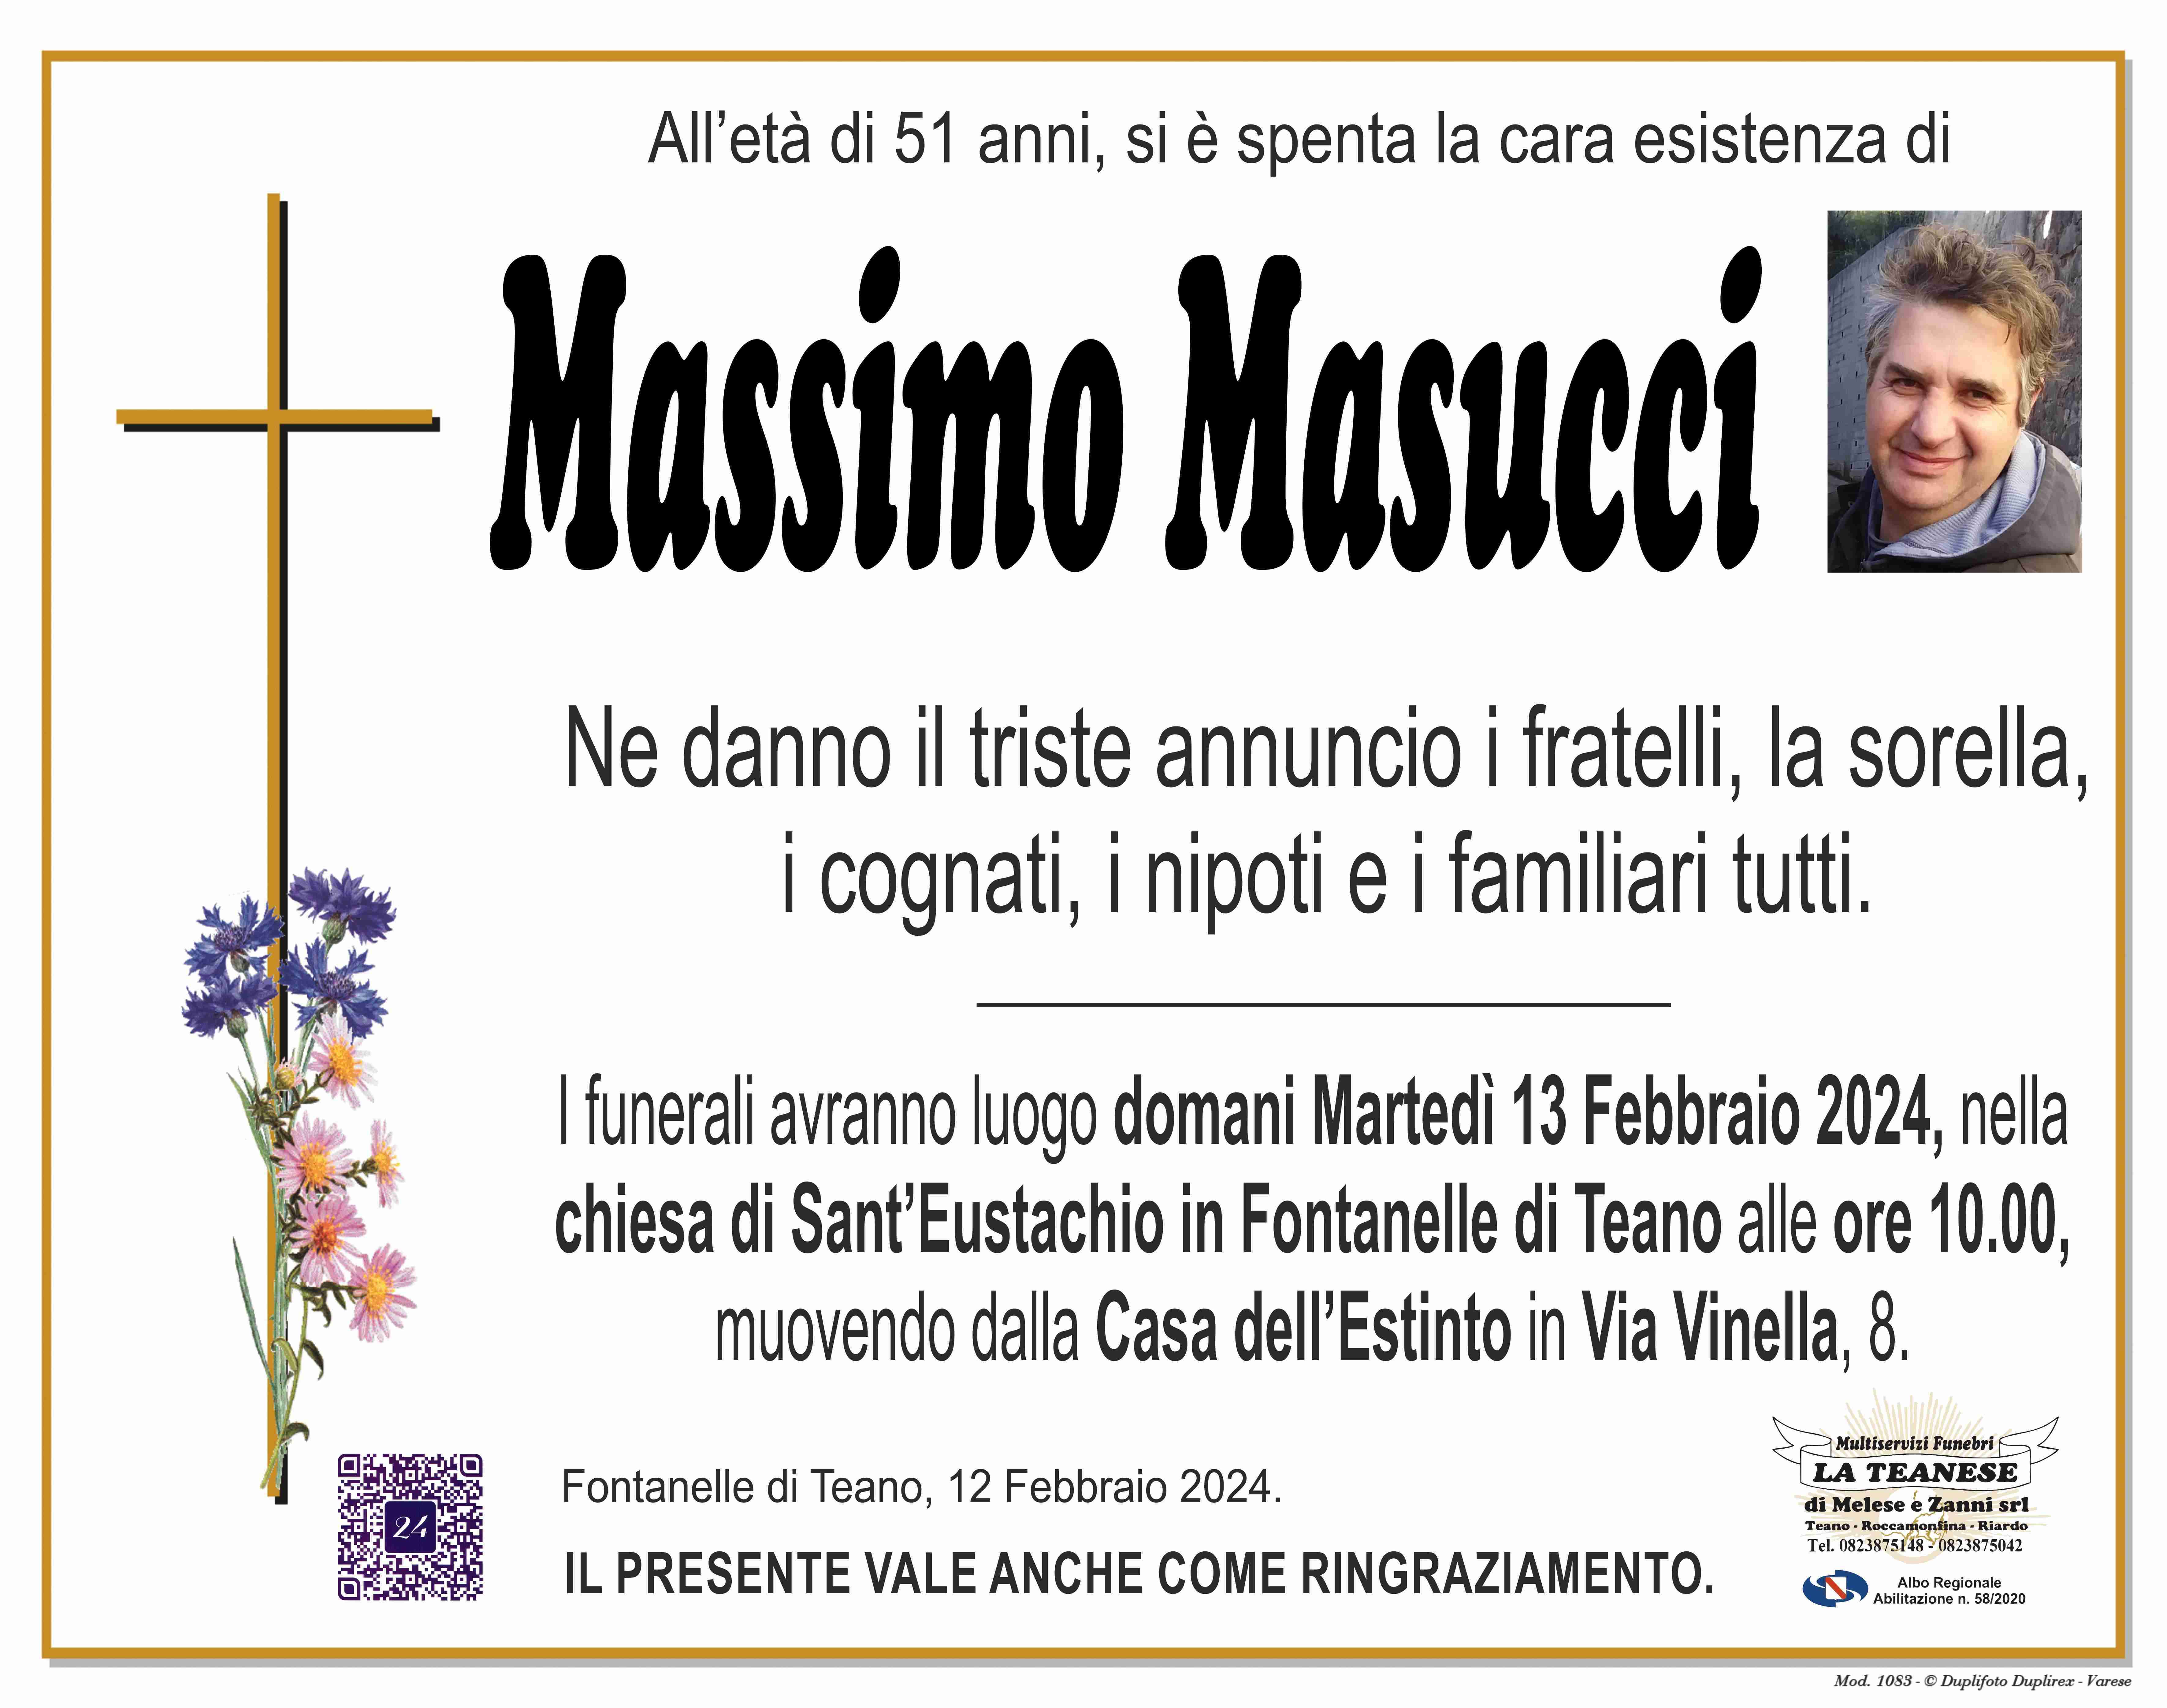 Massimo Masucci